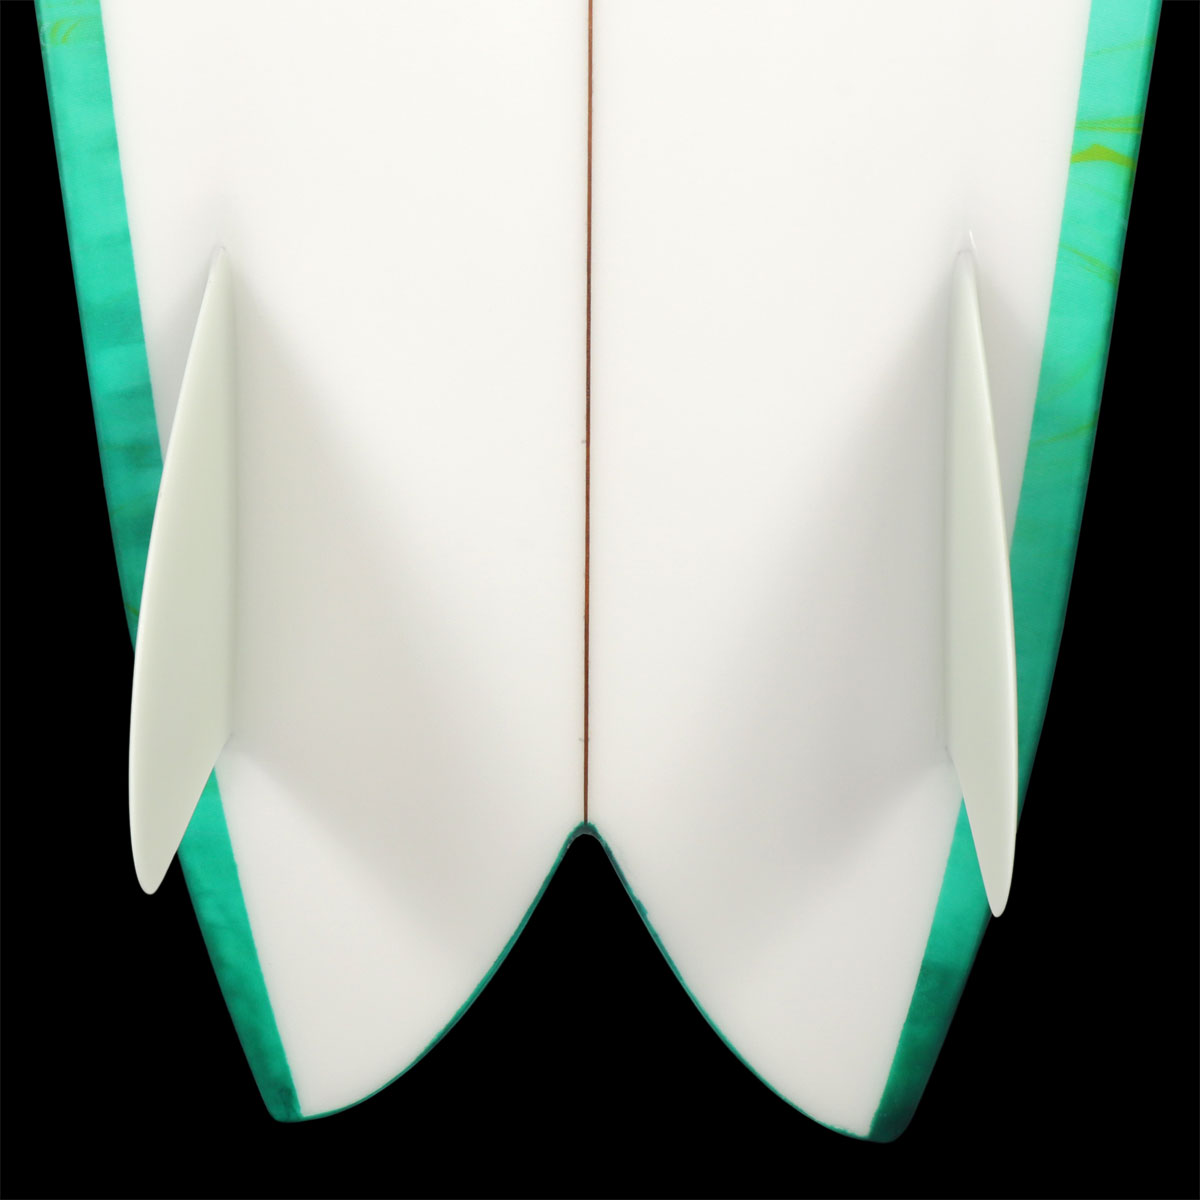 SurfBoardNet / ブランド:RYAN BURCH モデル:SQUIT FISH